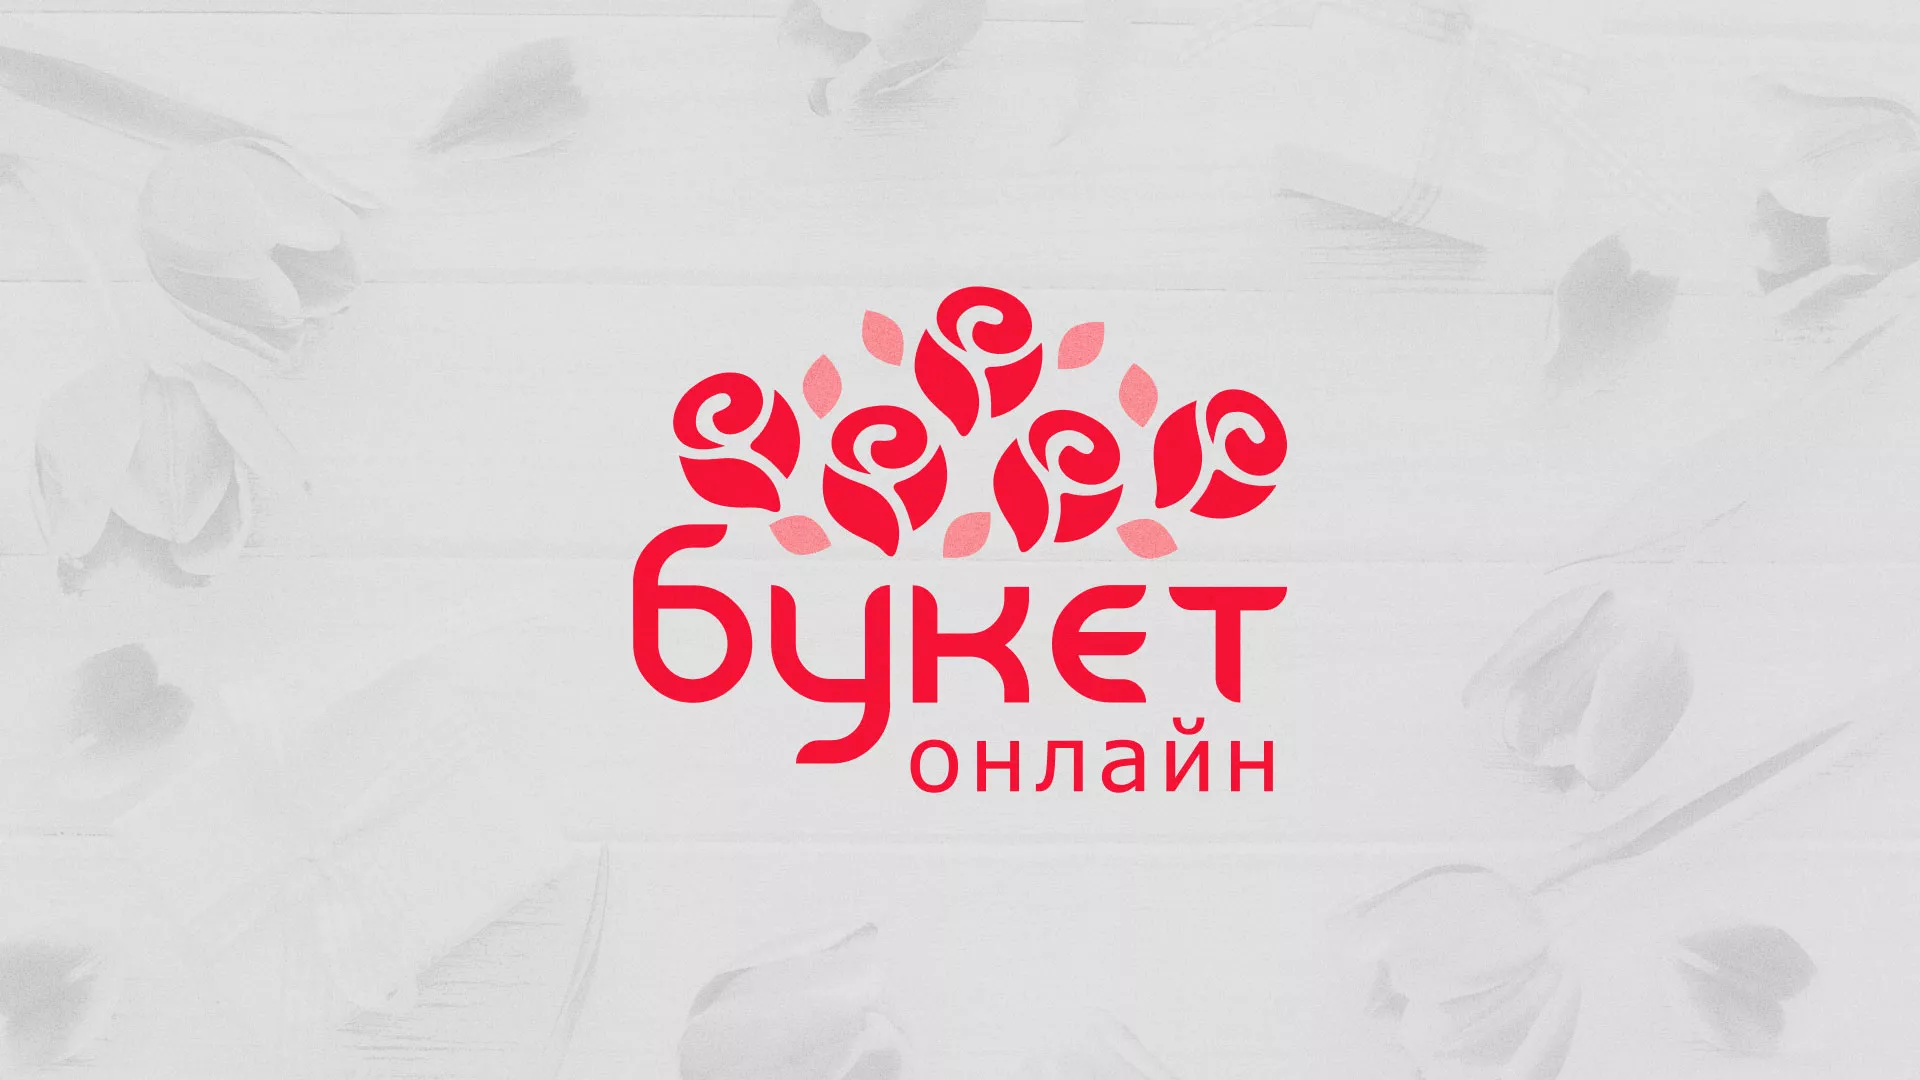 Создание интернет-магазина «Букет-онлайн» по цветам в Ижевске